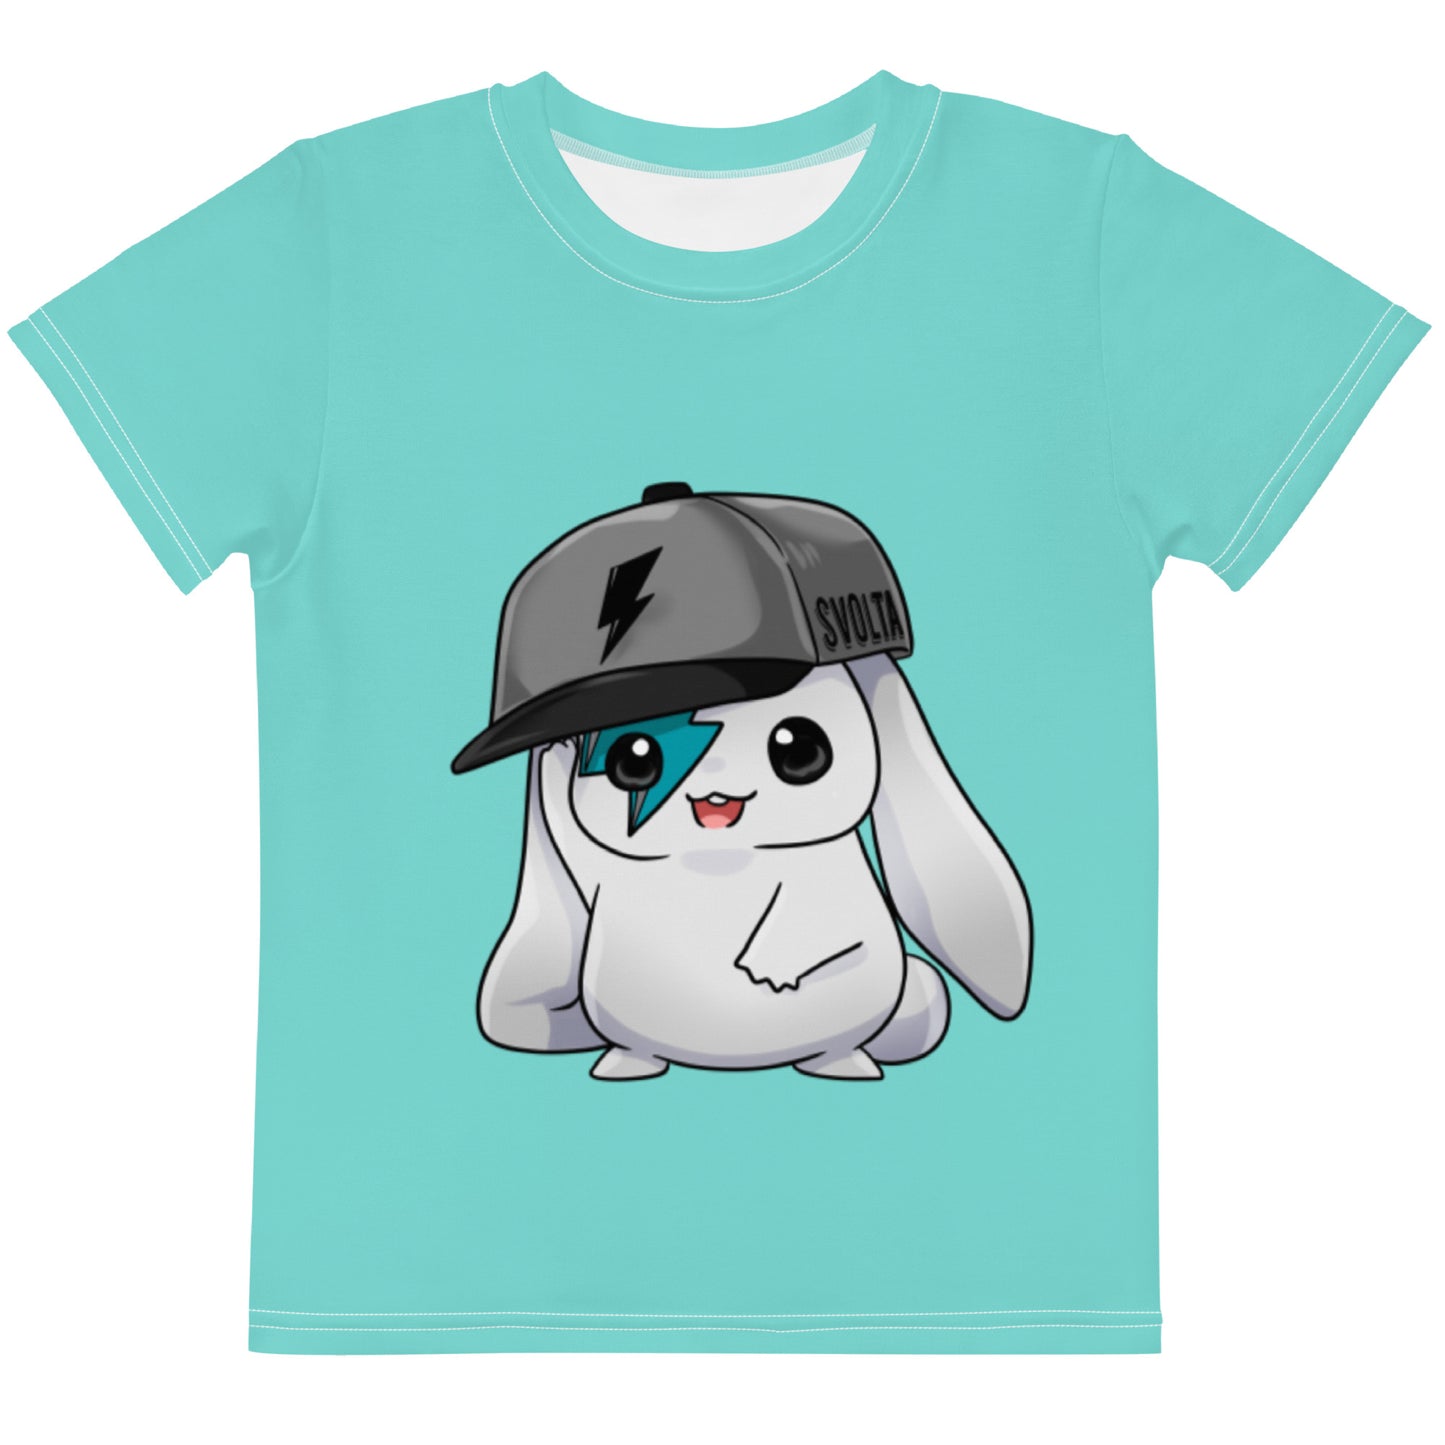 SVOLTA Kawaii Phoenix Happy Chibi T-shirt in Aqua, 2T-7 - Little Kids